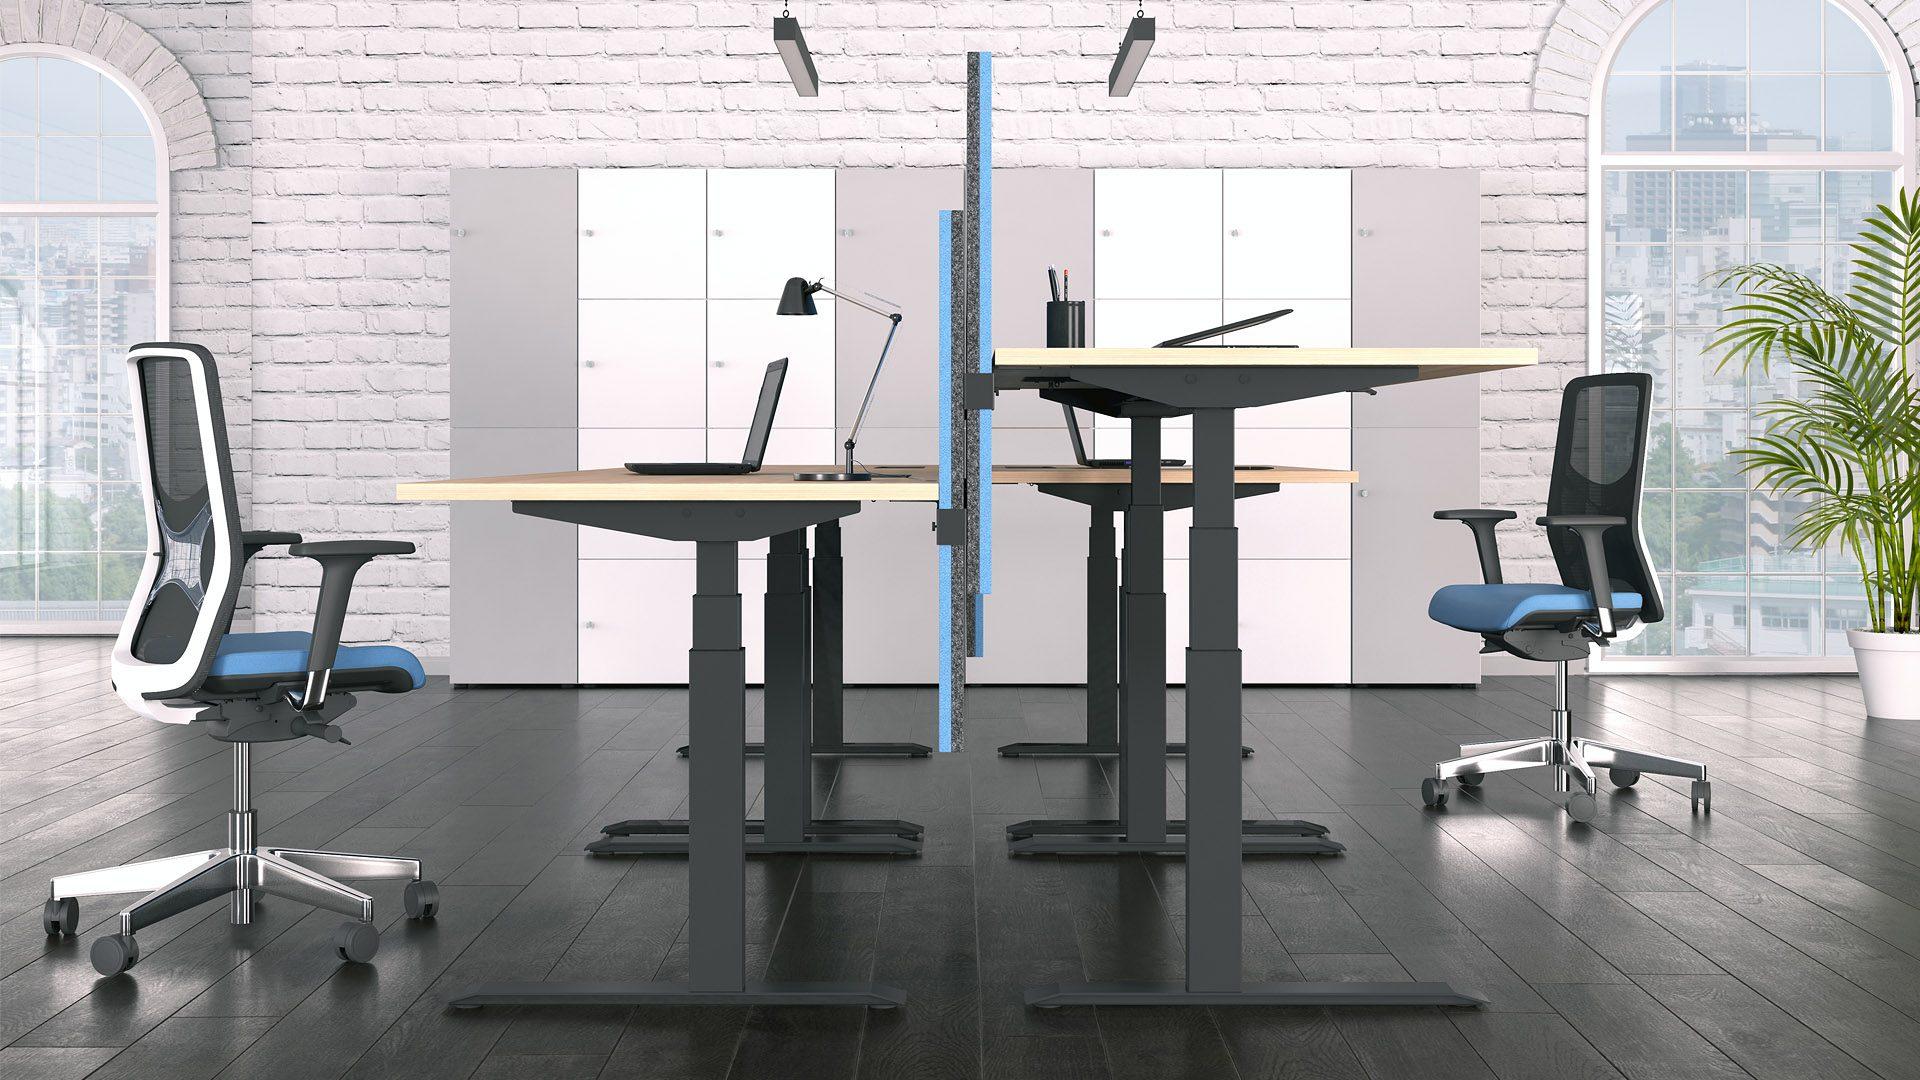 ACTIVE Biurko Regulowane NARBUTAS biurka z regulowaną wysokością blatu stelaż grafitowy blaty drewnopodobne ścianki między biurkami dwukolorowe krzesła biurkowe dopasowane kolorystycznie do ścianek